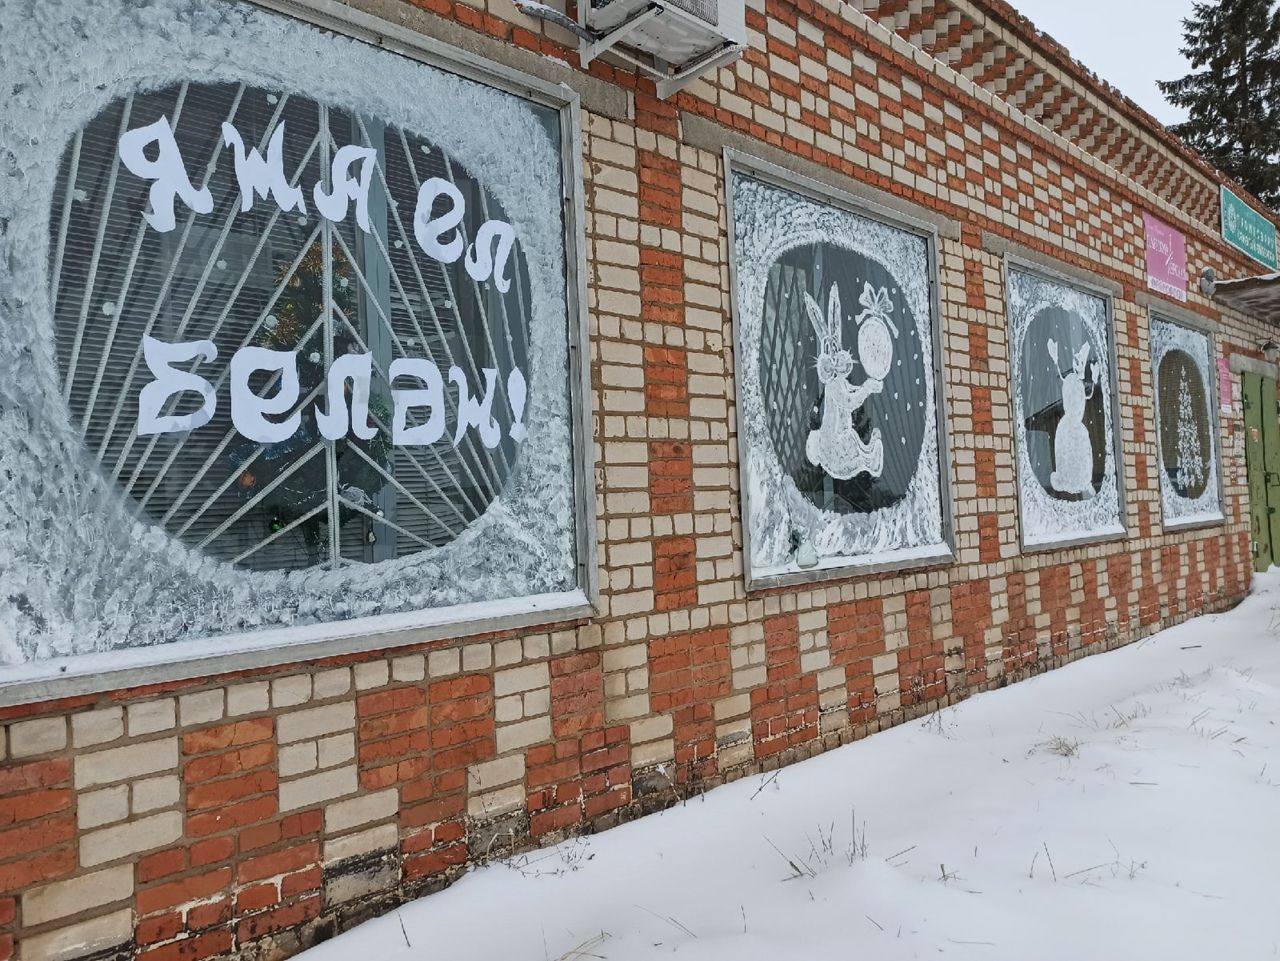 Сельское поселение Чистопольского района поборется за победу в республиканском конкурсе на лучшее новогоднее оформление